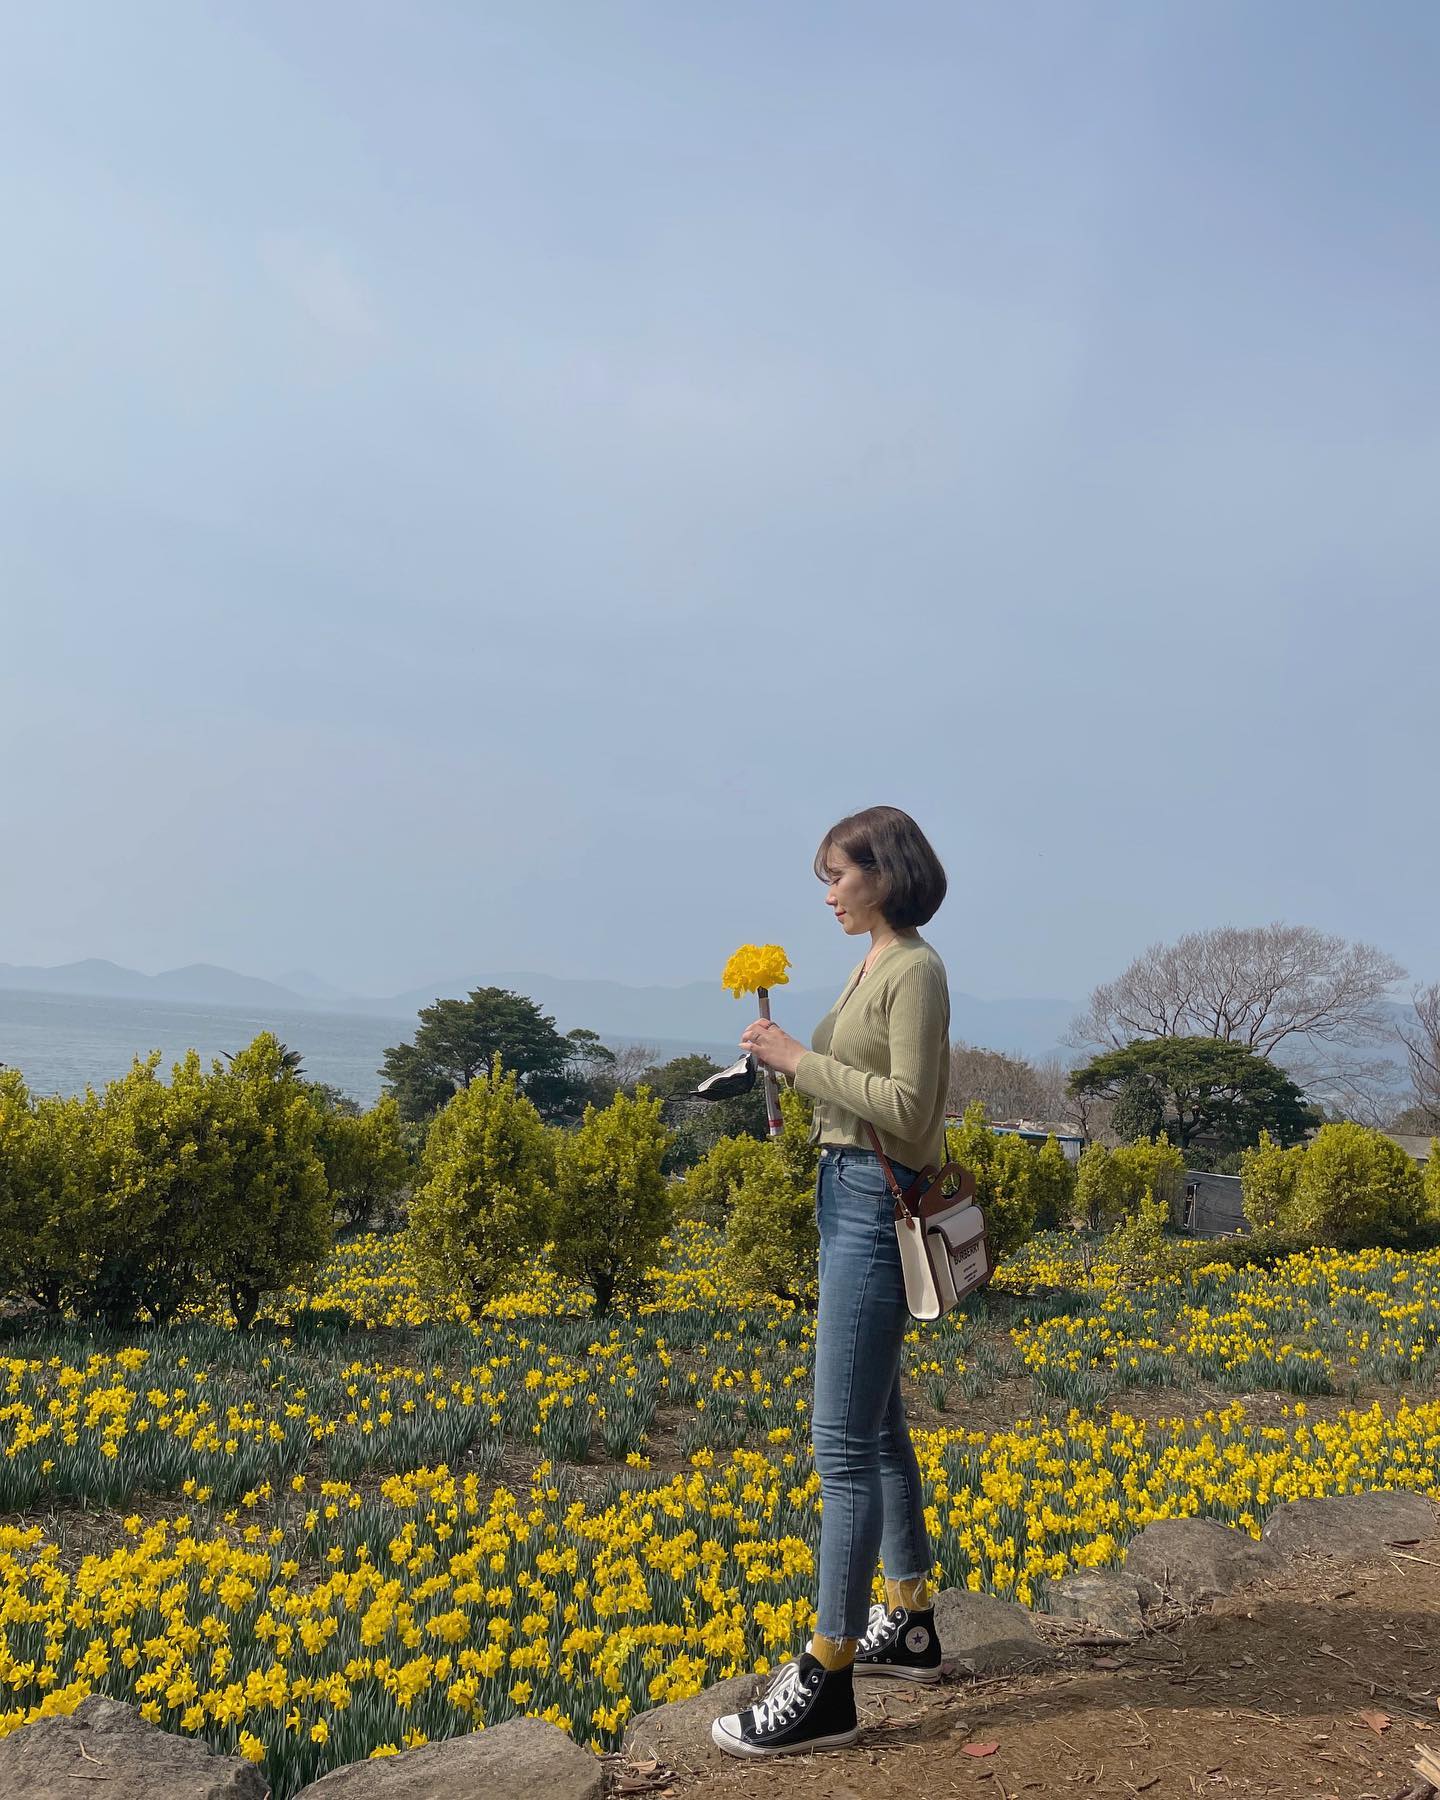 3-4월에 방문하면 계단식 다랭이 논밭에 노란 수선화가 가득하다.